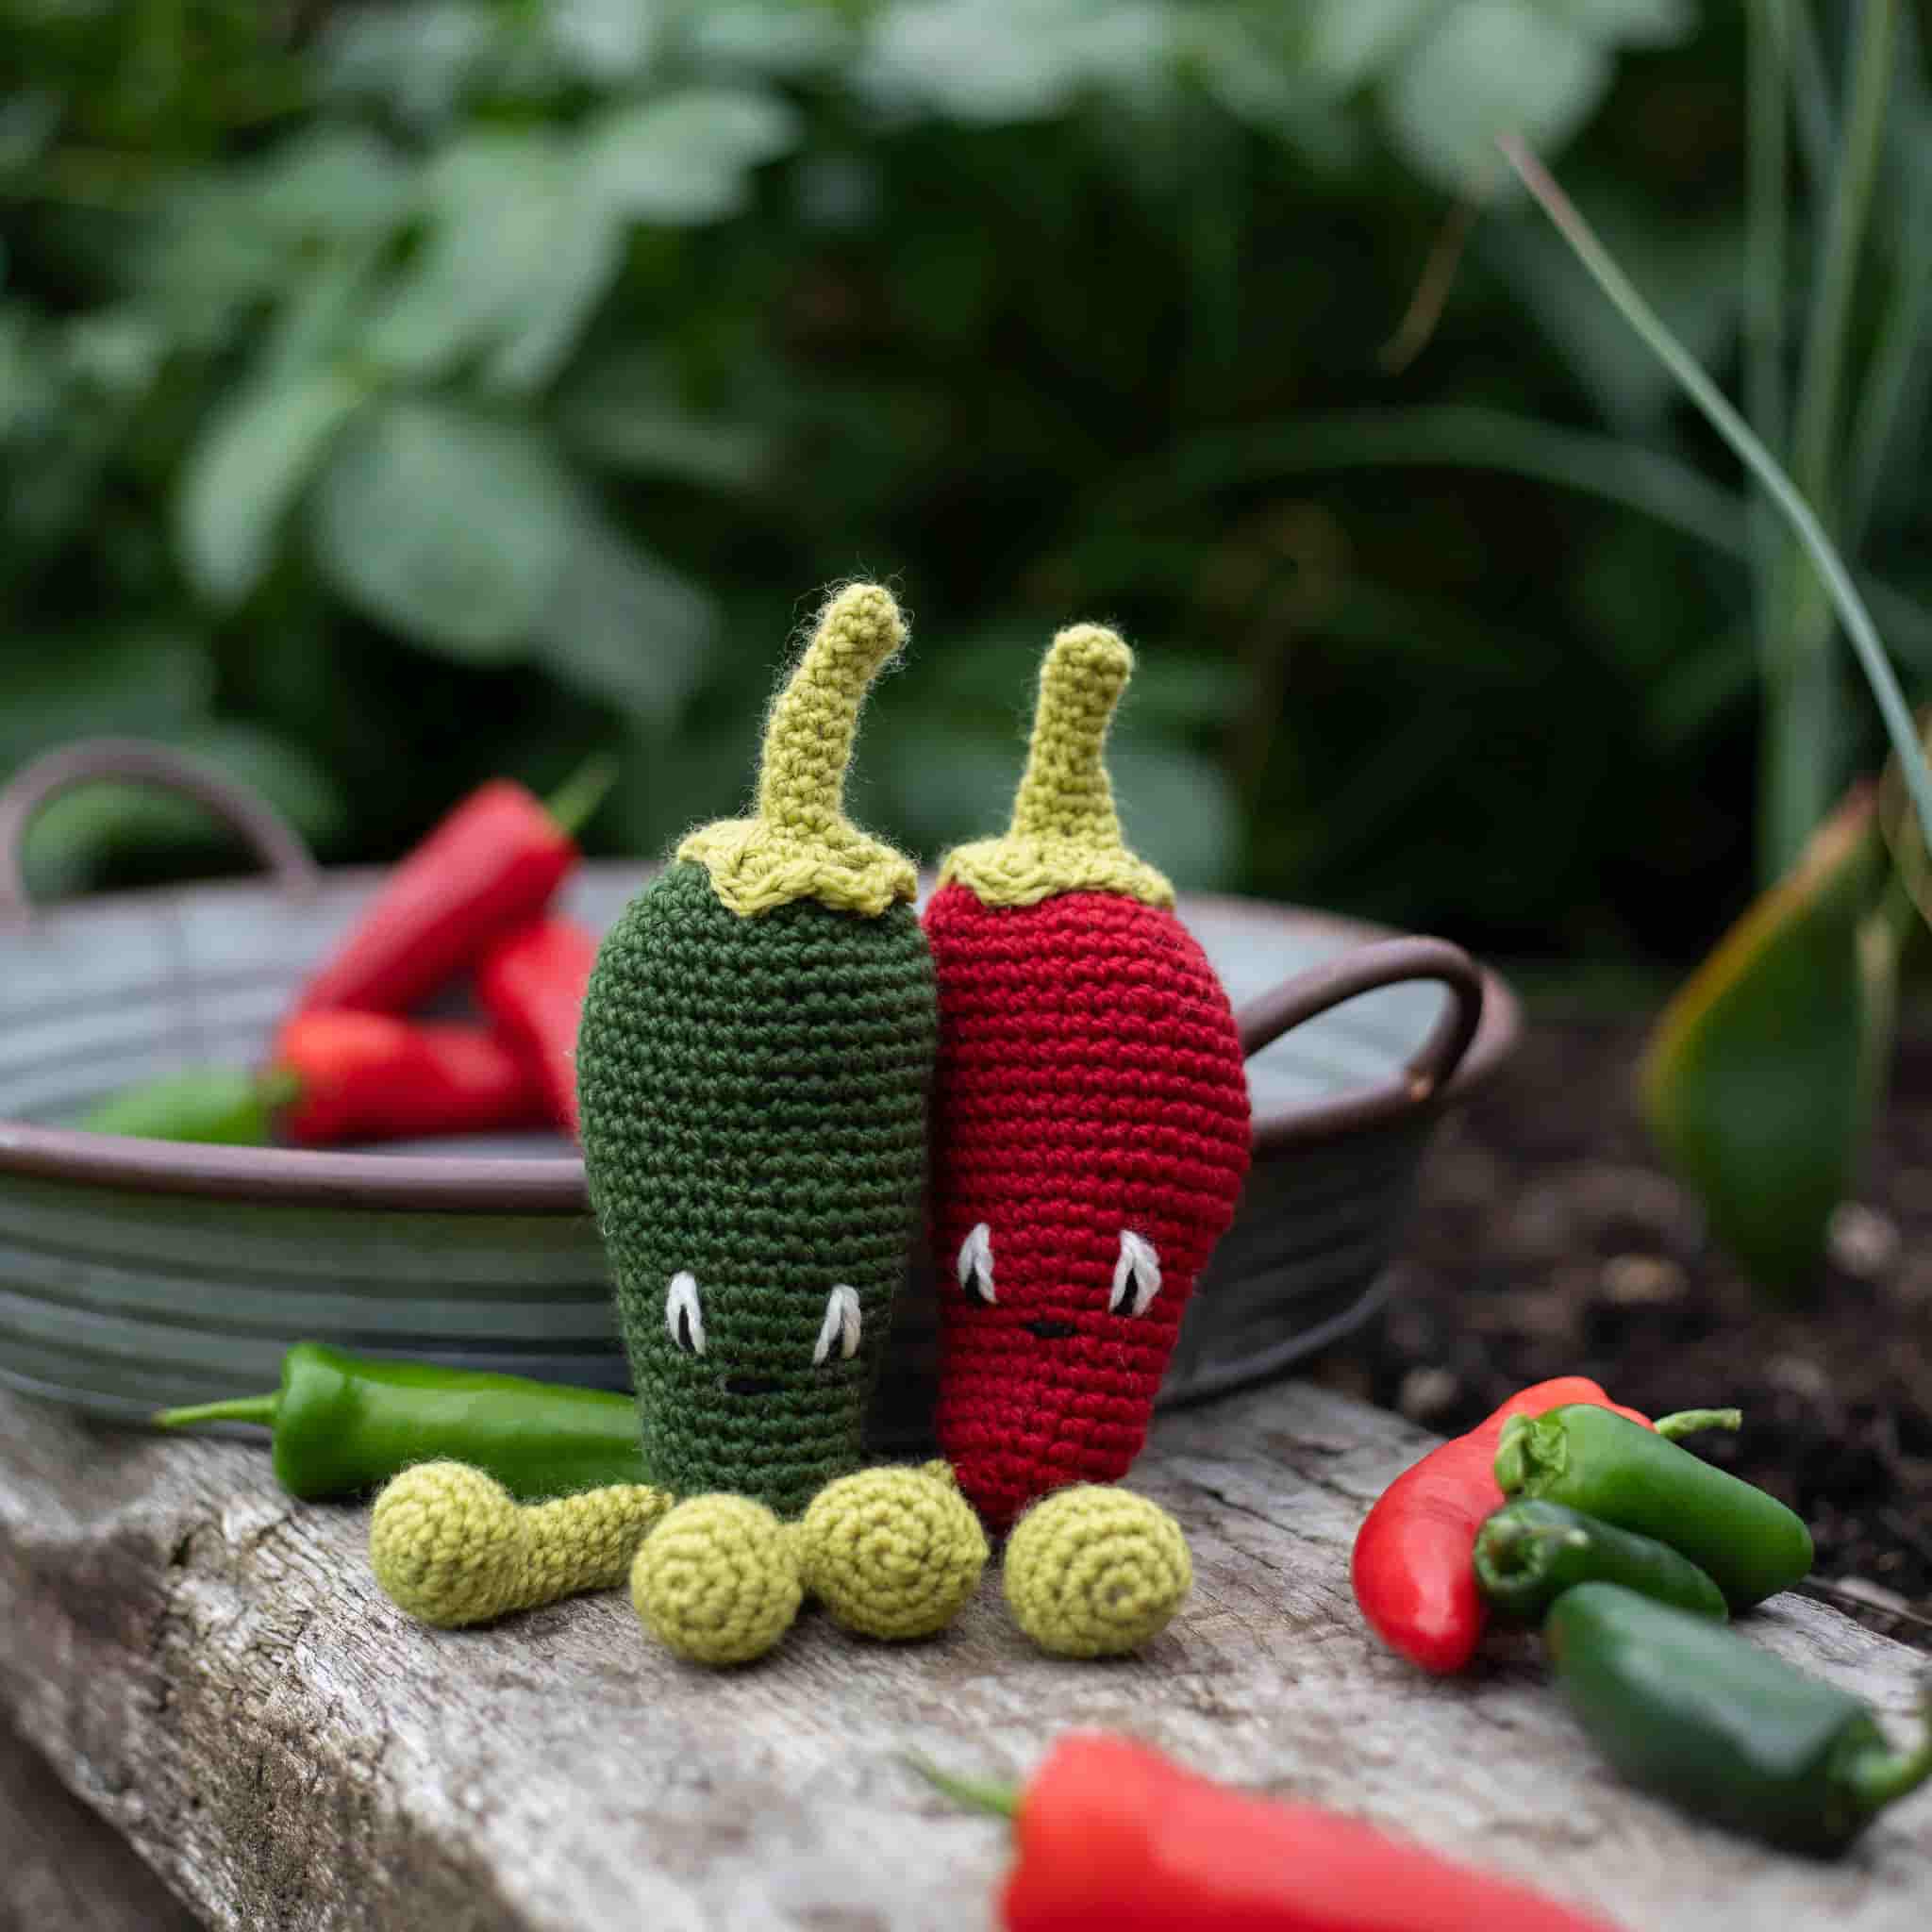 Make Your Own Jalapenos Crochet Kit